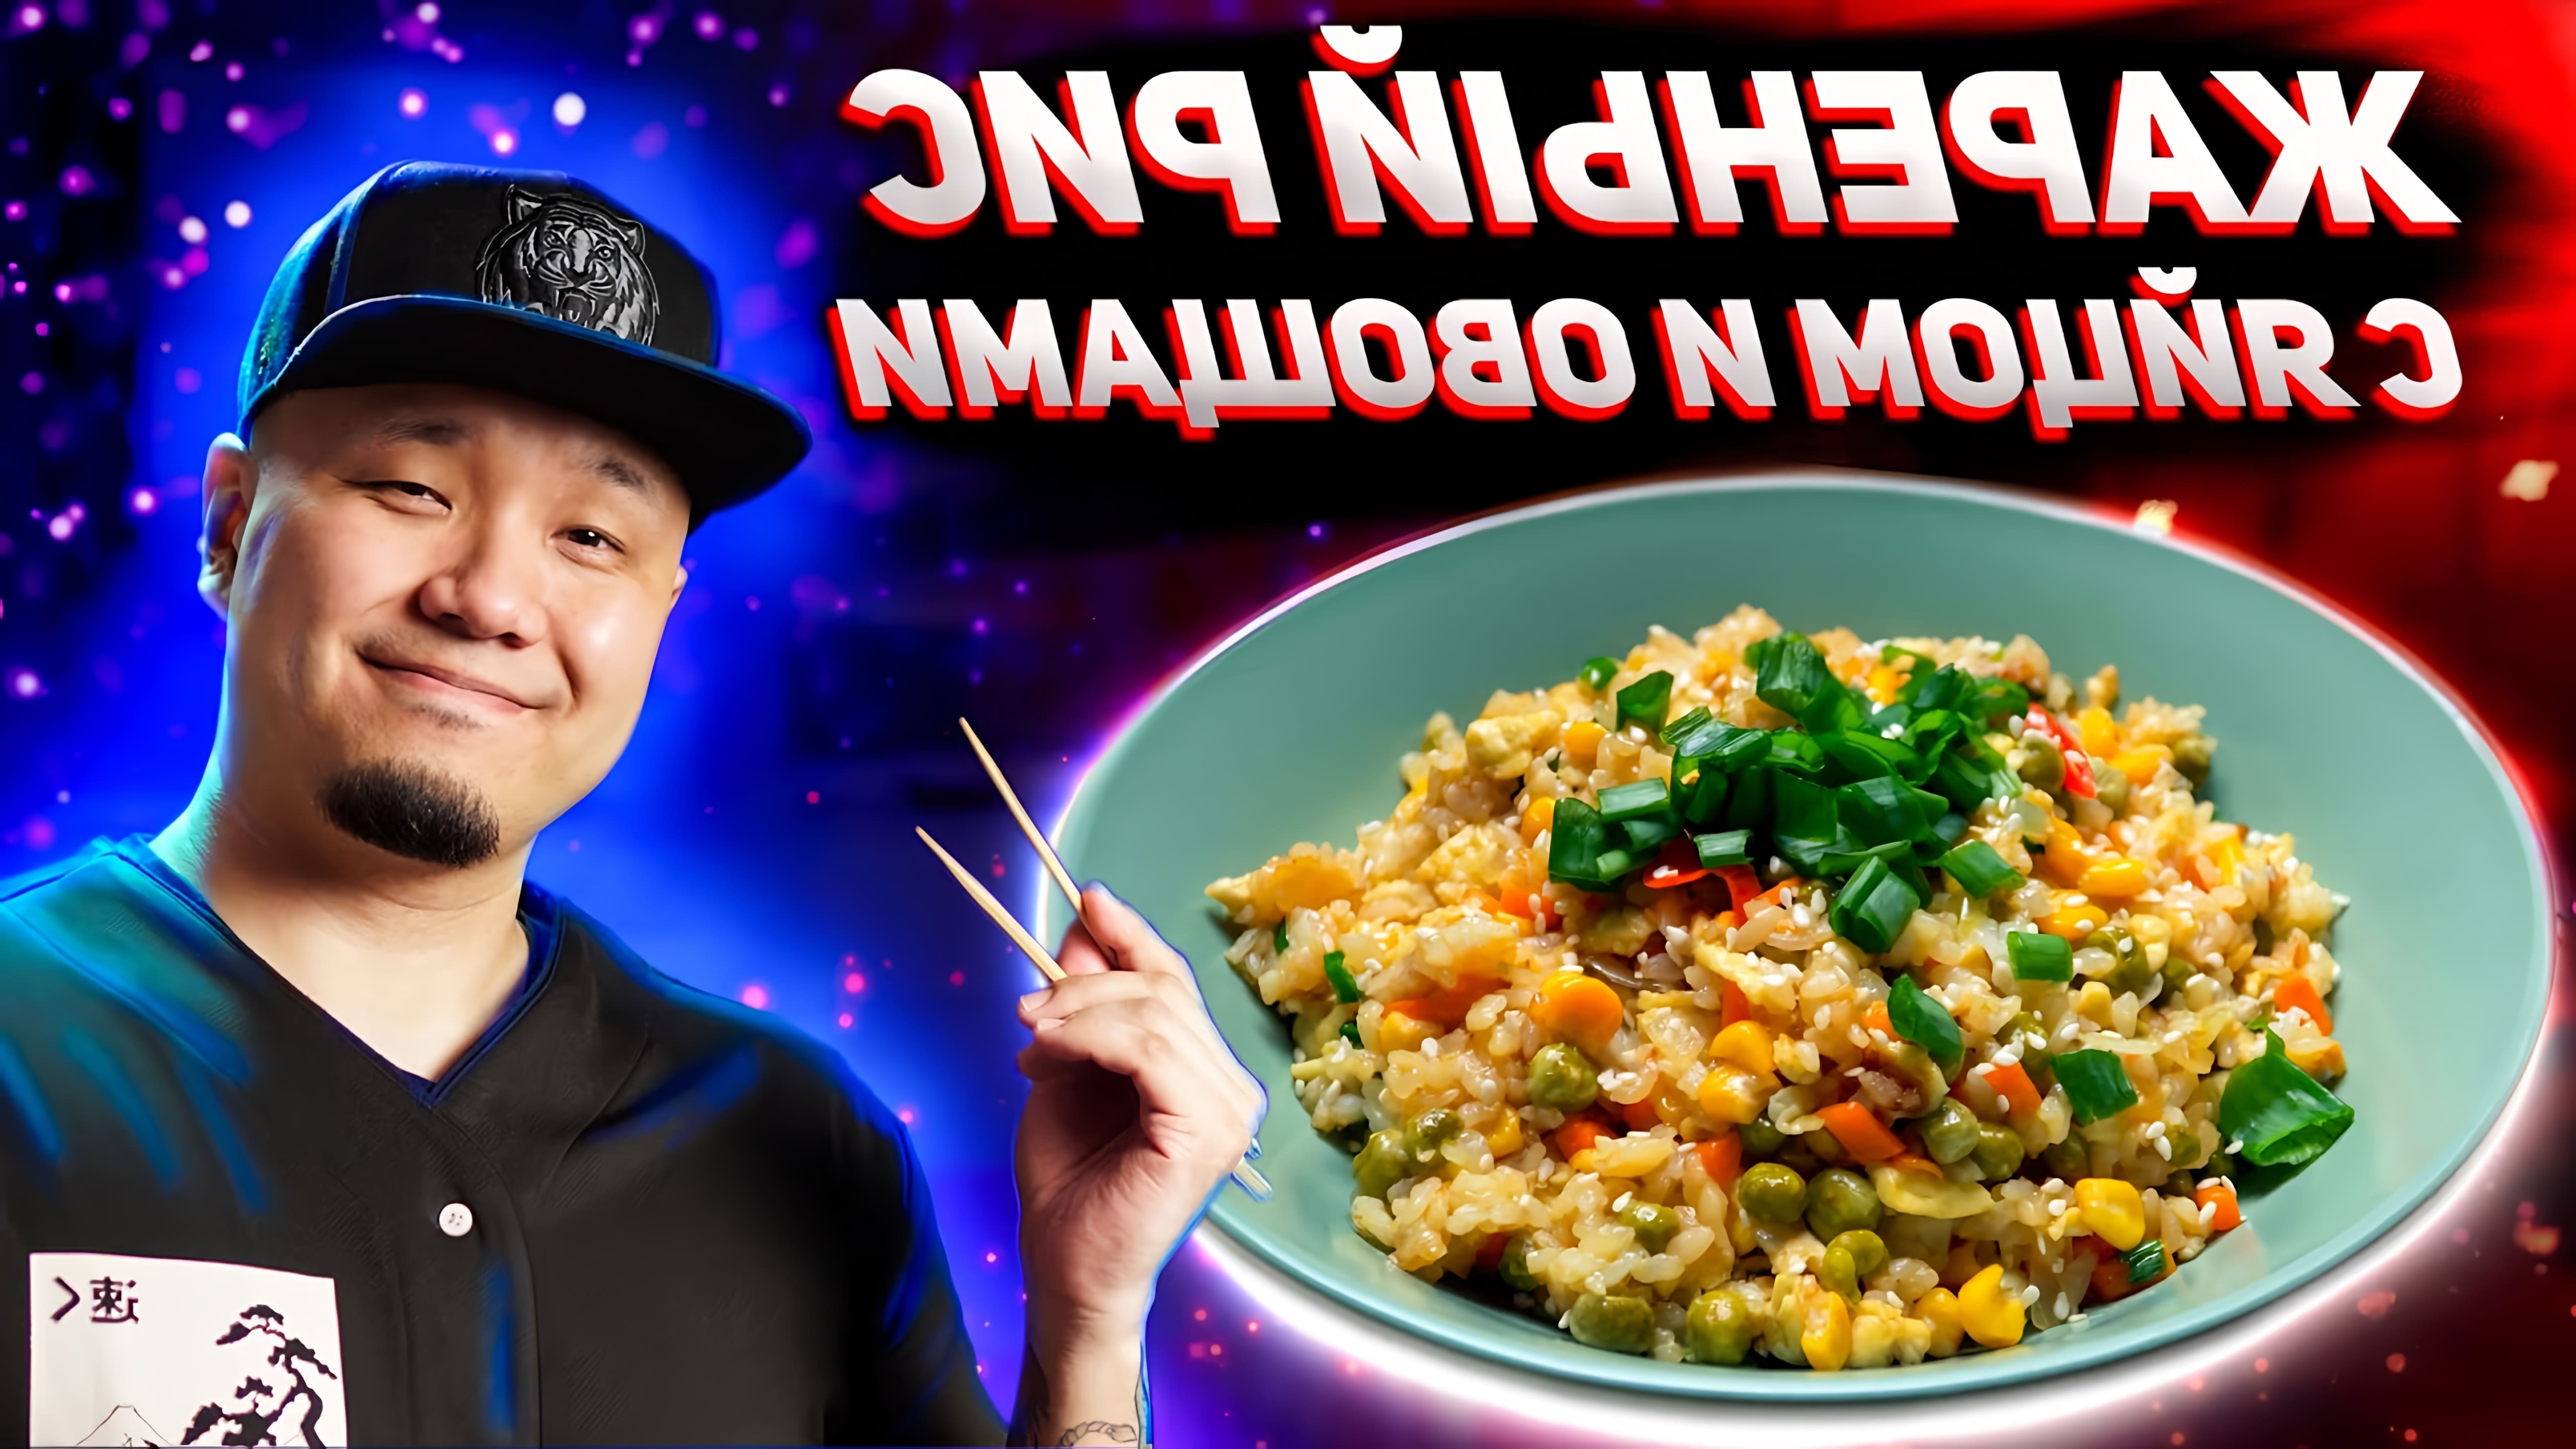 В этом видео демонстрируется рецепт приготовления жареного риса с яйцом и овощами